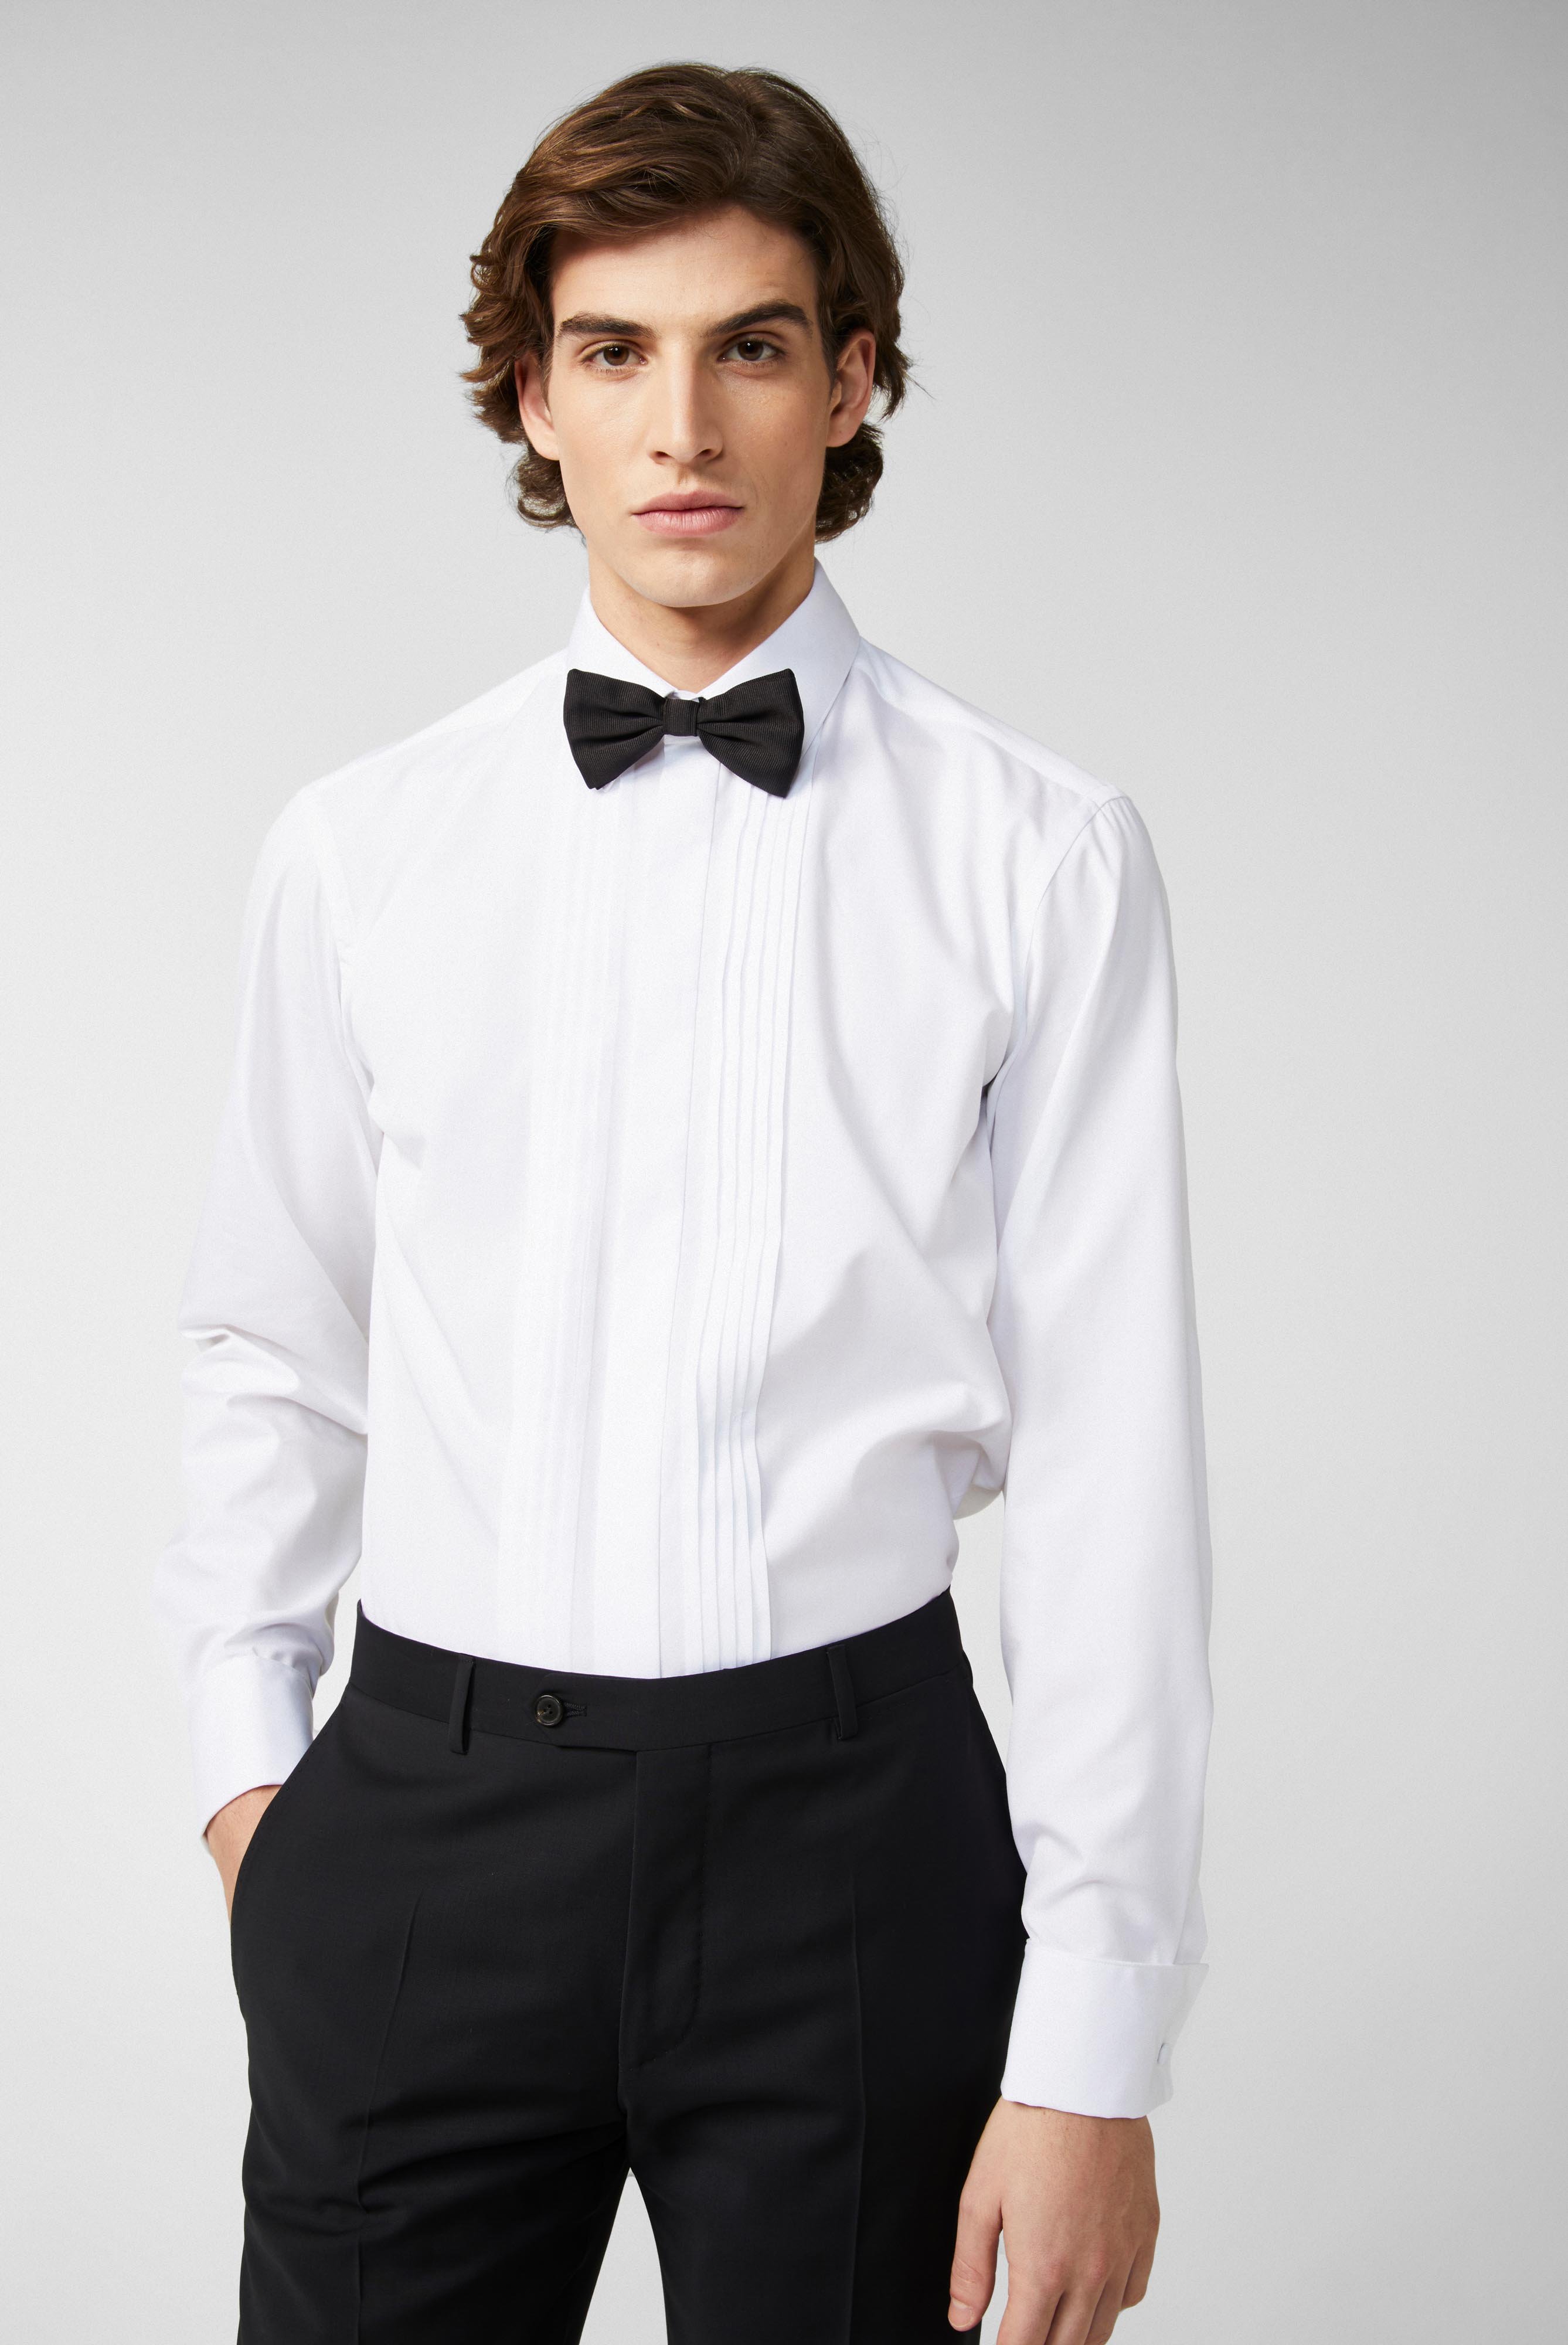 Business Hemden+Smokinghemd mit Plissee-Einsatz Tailor Fit+20.2066.NV.130648.000.37